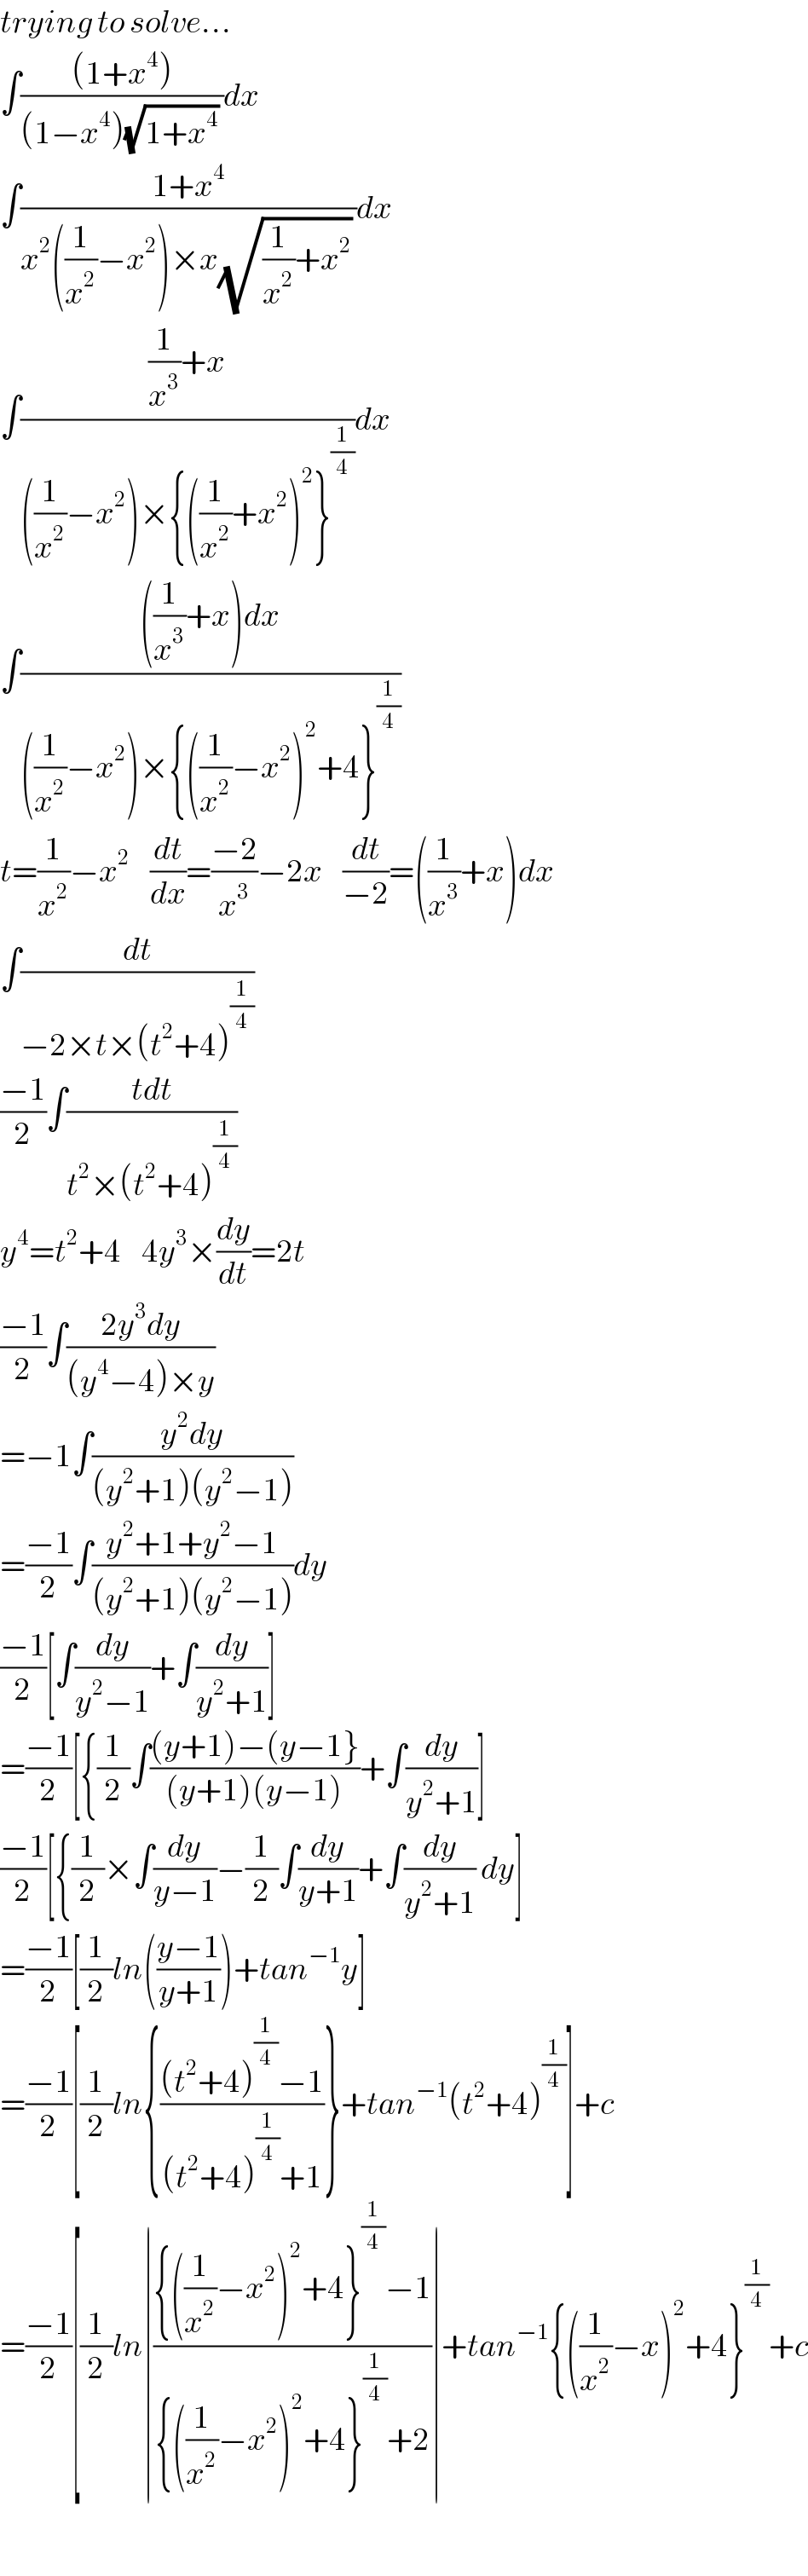 trying to solve...  ∫(((1+x^4 ))/((1−x^4 )(√(1+x^4 )) ))dx  ∫((1+x^4 )/(x^2 ((1/x^2 )−x^2 )×x(√((1/x^2 )+x^2 )) ))dx  ∫(((1/x^3 )+x)/(((1/x^2 )−x^2 )×{((1/x^2 )+x^2 )^2 }^(1/4) ))dx  ∫((((1/x^3 )+x)dx)/(((1/x^2 )−x^2 )×{((1/x^2 )−x^2 )^2 +4}^(1/4) ))  t=(1/x^2 )−x^2     (dt/dx)=((−2)/x^3 )−2x    (dt/(−2))=((1/x^3 )+x)dx  ∫(dt/(−2×t×(t^2 +4)^(1/4) ))  ((−1)/2)∫((tdt)/(t^2 ×(t^2 +4)^(1/4) ))  y^4 =t^2 +4    4y^3 ×(dy/dt)=2t  ((−1)/2)∫((2y^3 dy)/((y^4 −4)×y))  =−1∫((y^2 dy)/((y^2 +1)(y^2 −1)))  =((−1)/2)∫((y^2 +1+y^2 −1)/((y^2 +1)(y^2 −1)))dy  ((−1)/2)[∫(dy/(y^2 −1))+∫(dy/(y^2 +1))]  =((−1)/2)[{(1/2)∫(((y+1)−(y−1})/((y+1)(y−1)))+∫(dy/(y^2 +1))]  ((−1)/2)[{(1/2)×∫(dy/(y−1))−(1/2)∫(dy/(y+1))+∫(dy/(y^2 +1)) dy]  =((−1)/2)[(1/2)ln(((y−1)/(y+1)))+tan^(−1) y]  =((−1)/2)[(1/2)ln{(((t^2 +4)^(1/4) −1)/((t^2 +4)^(1/4) +1))}+tan^(−1) (t^2 +4)^(1/4) ]+c  =((−1)/2)[(1/2)ln∣(({((1/x^2 )−x^2 )^2 +4}^(1/4) −1)/({((1/x^2 )−x^2 )^2 +4}^(1/4) +2))∣+tan^(−1) {((1/x^2 )−x)^2 +4}^(1/4) +c    